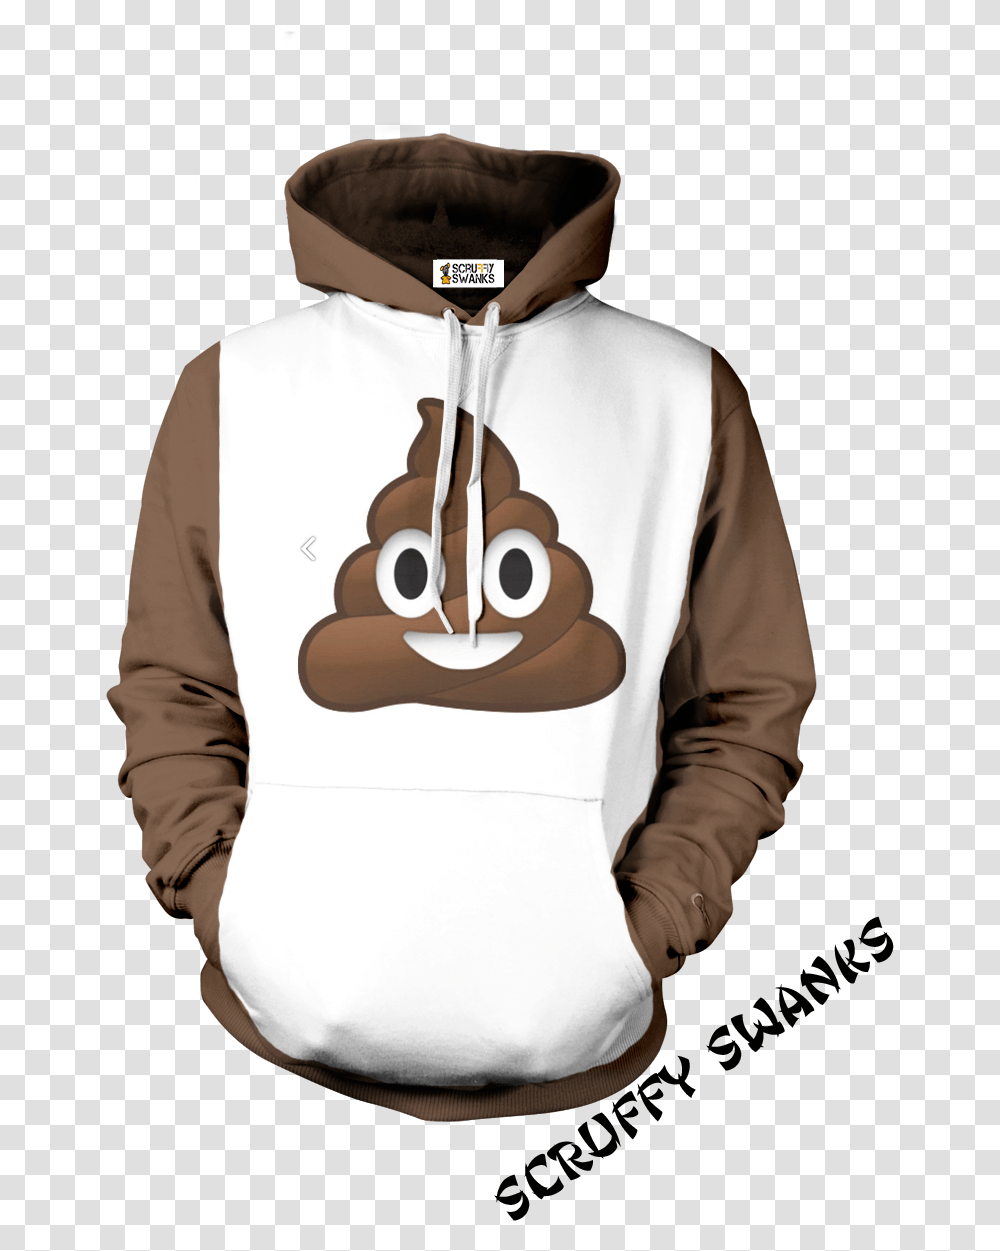 Poop Emoji Hoodie, Apparel, Sweater, Sweatshirt Transparent Png